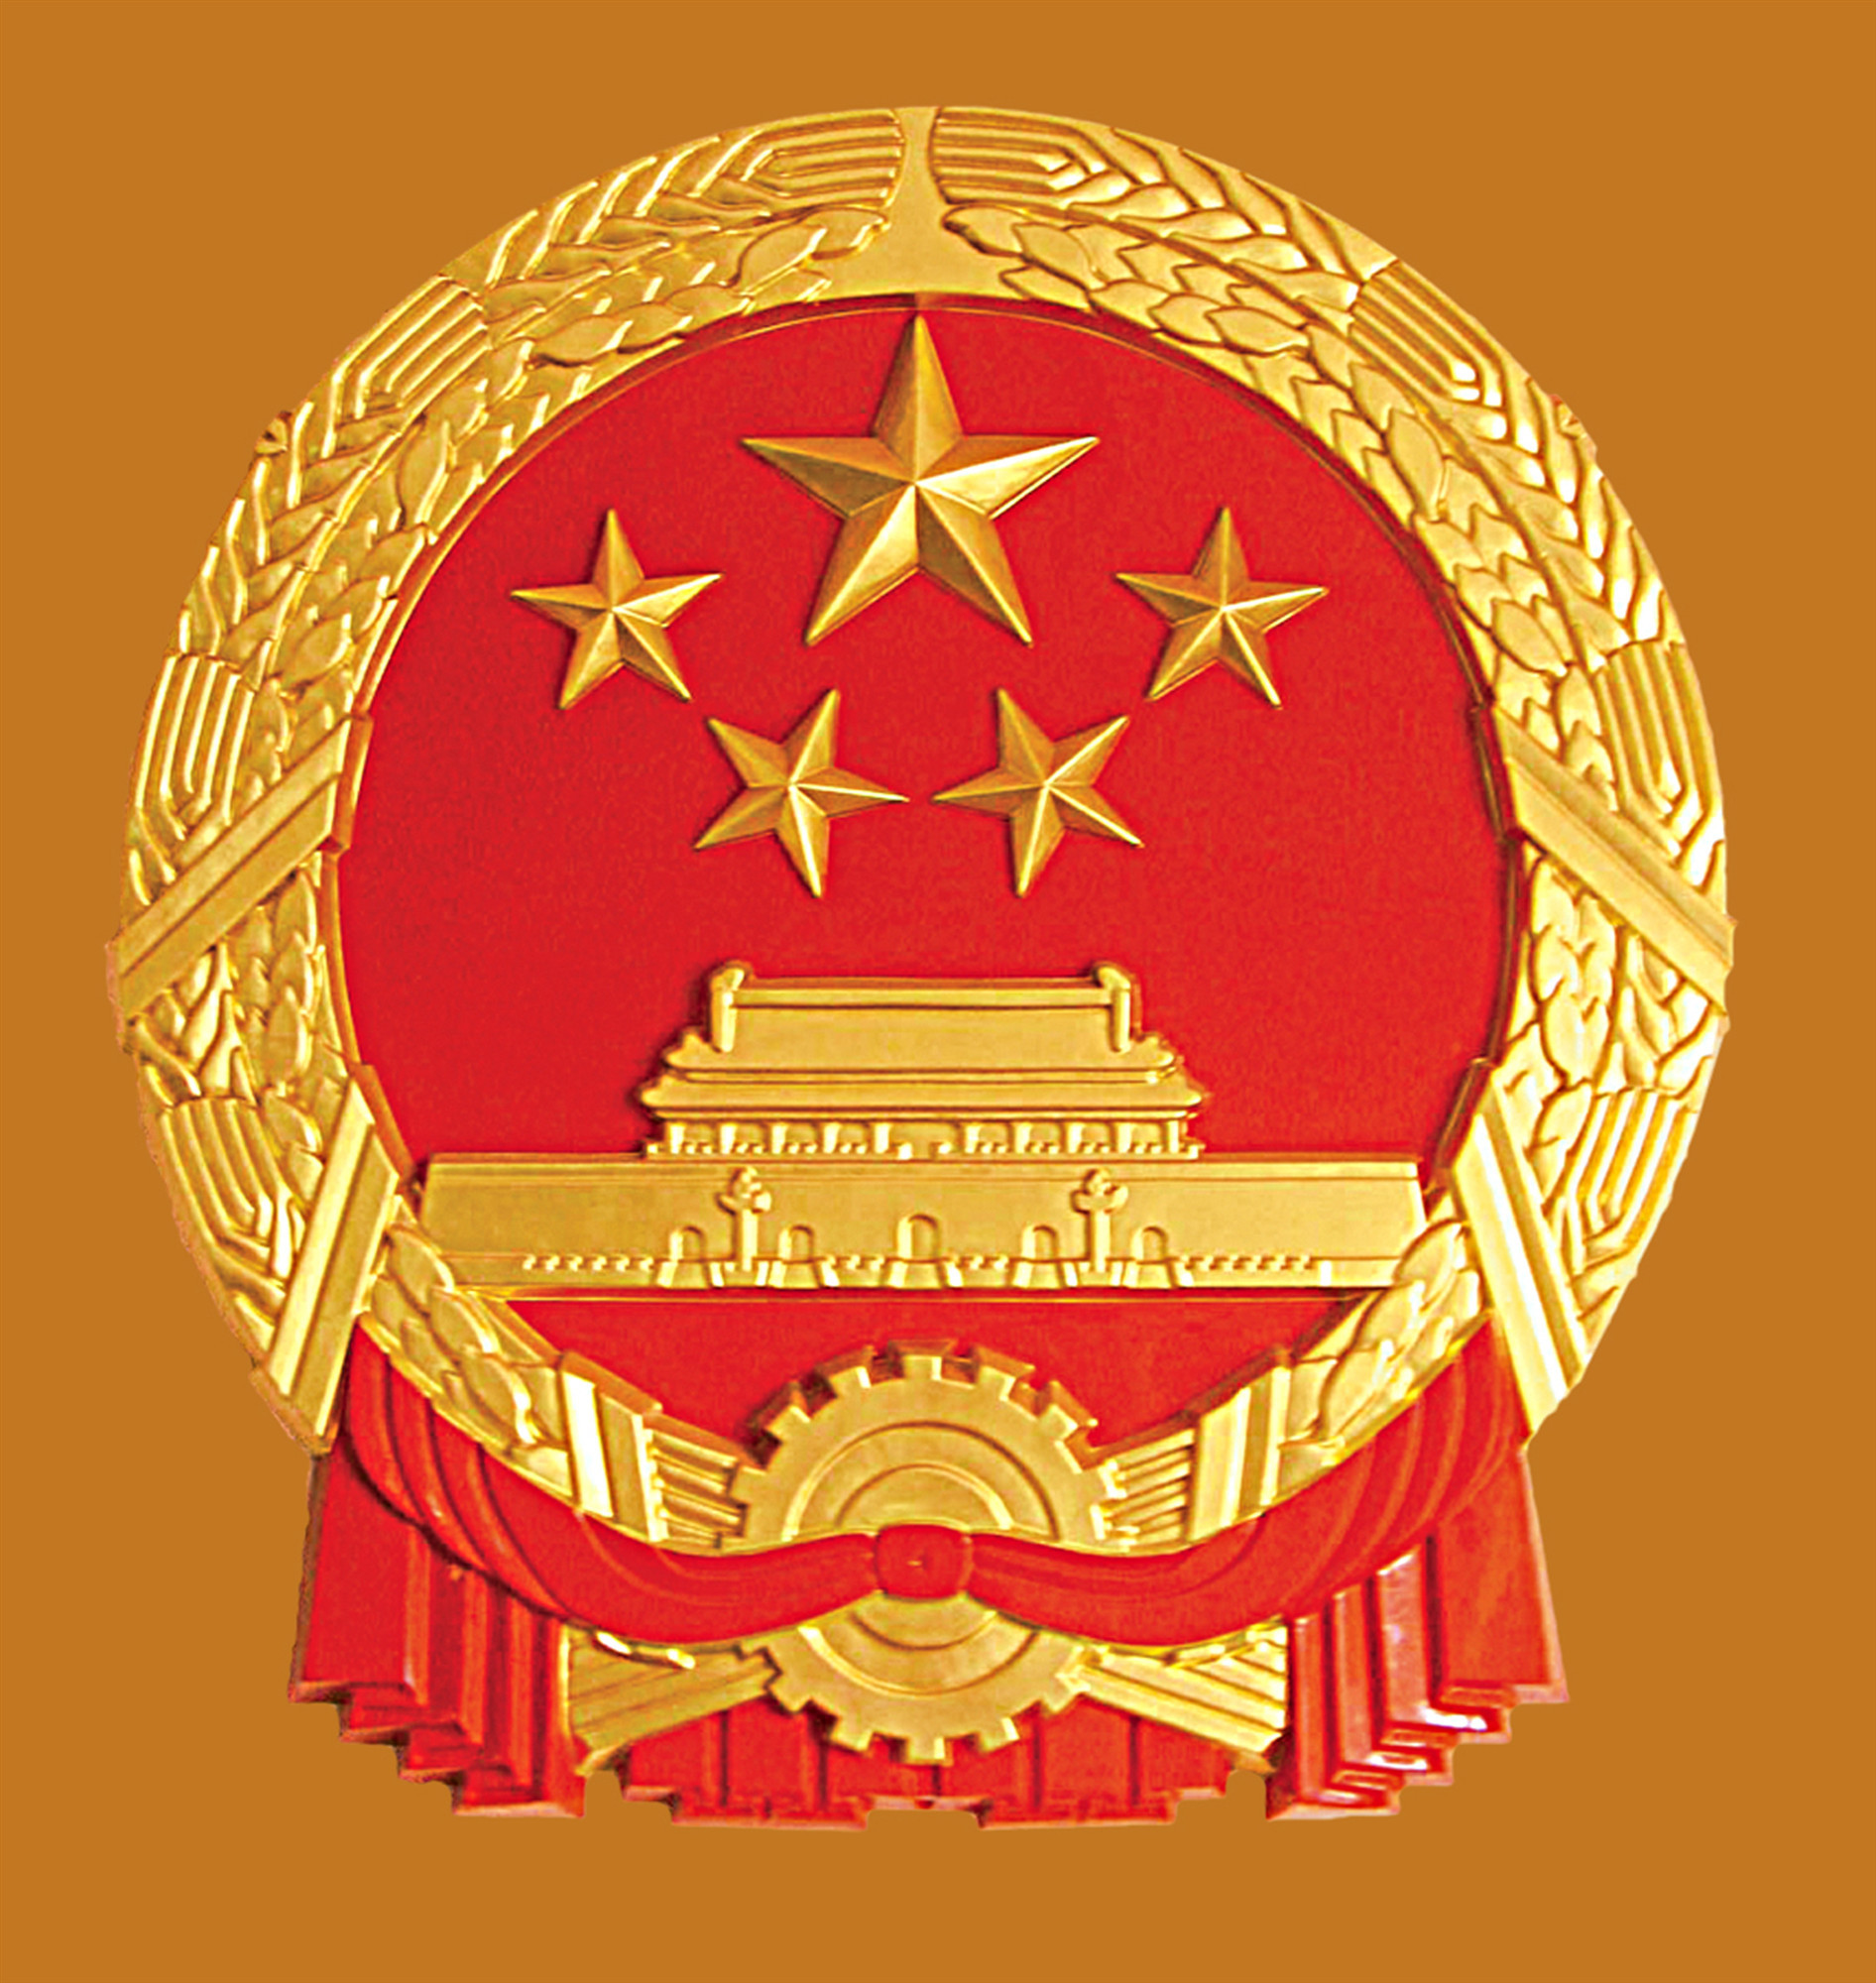 【政协·往事】中华人民共和国国徽是何时确定的?